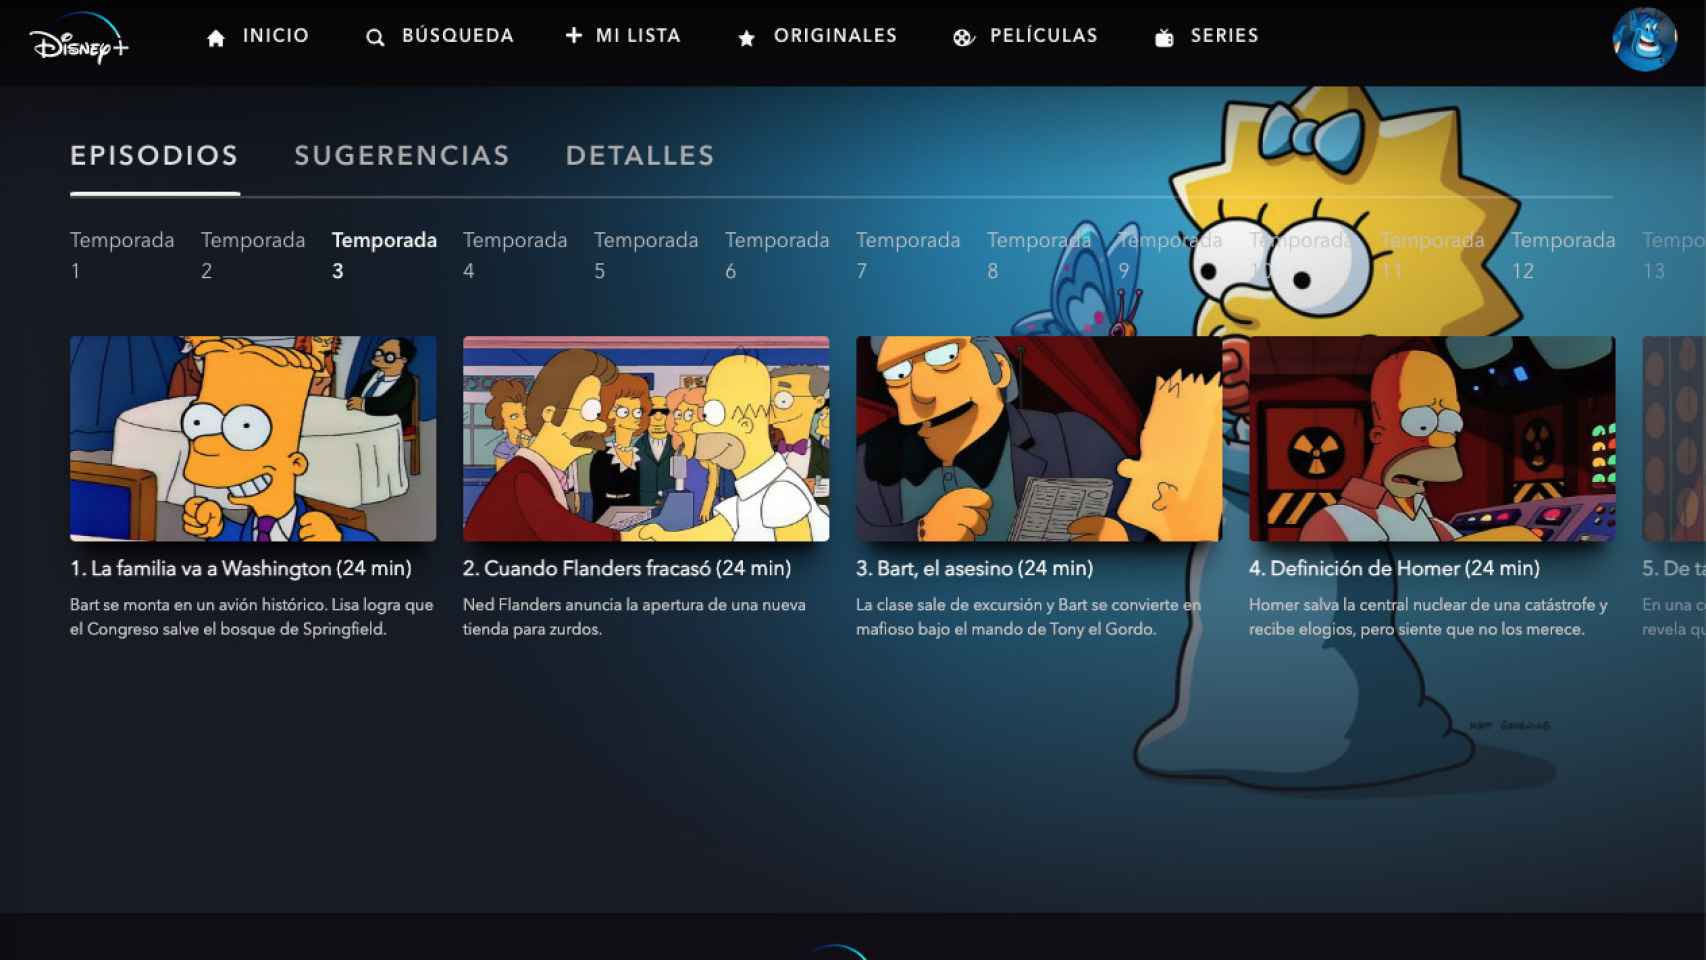 Captura de catálogo de Disney+, donde no aparece el episodio.